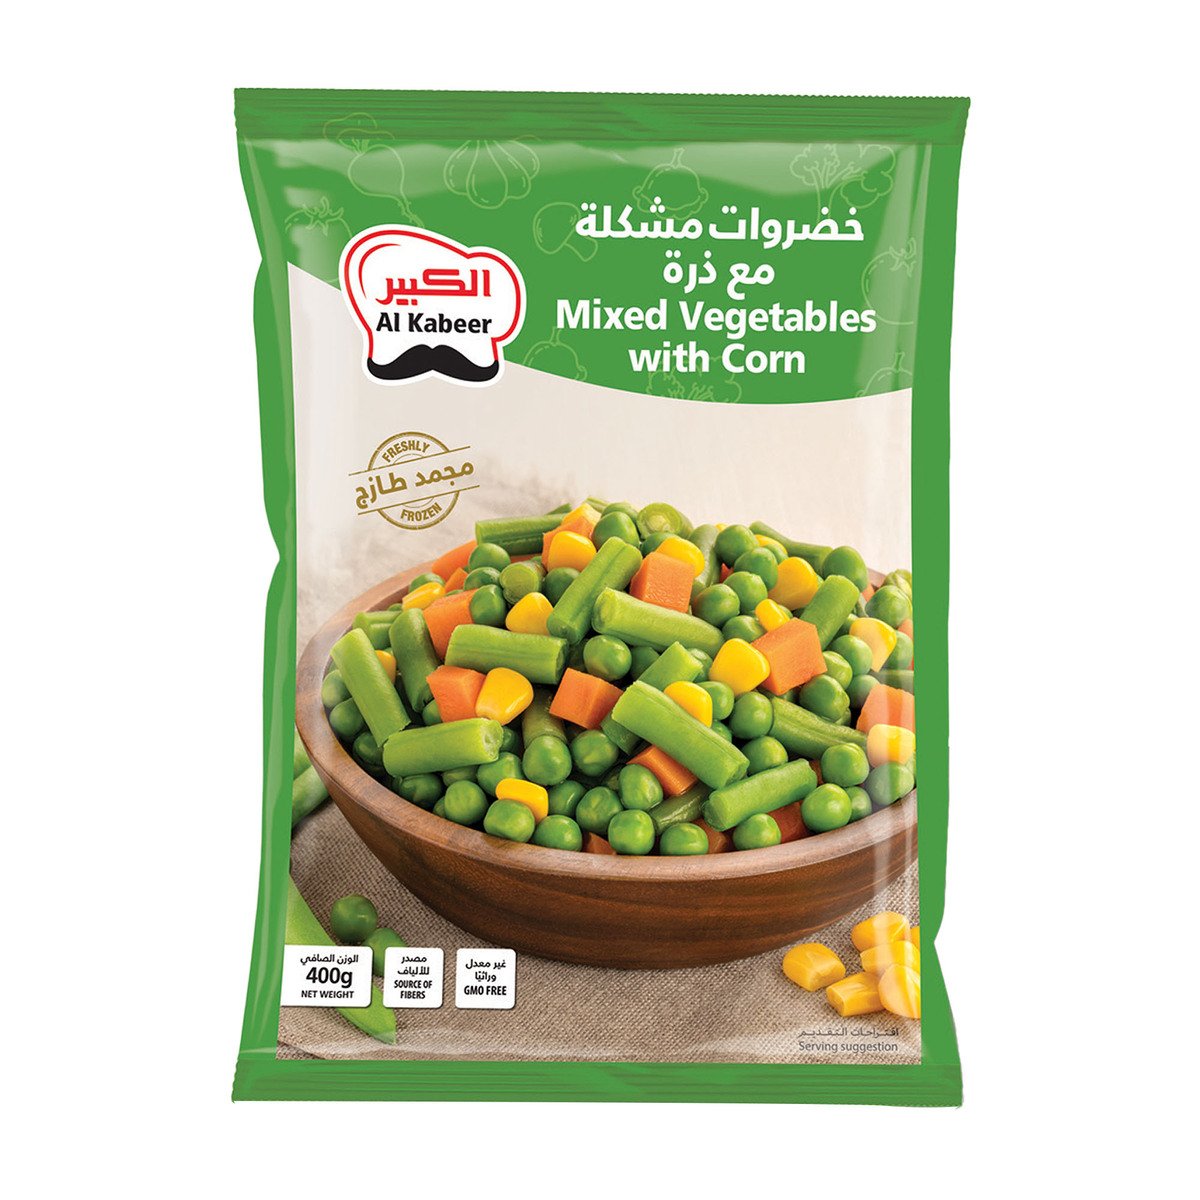 اشتري قم بشراء الكبير خضروات مشكلة 400 جم Online at Best Price من الموقع - من لولو هايبر ماركت Mix Vegetable في السعودية